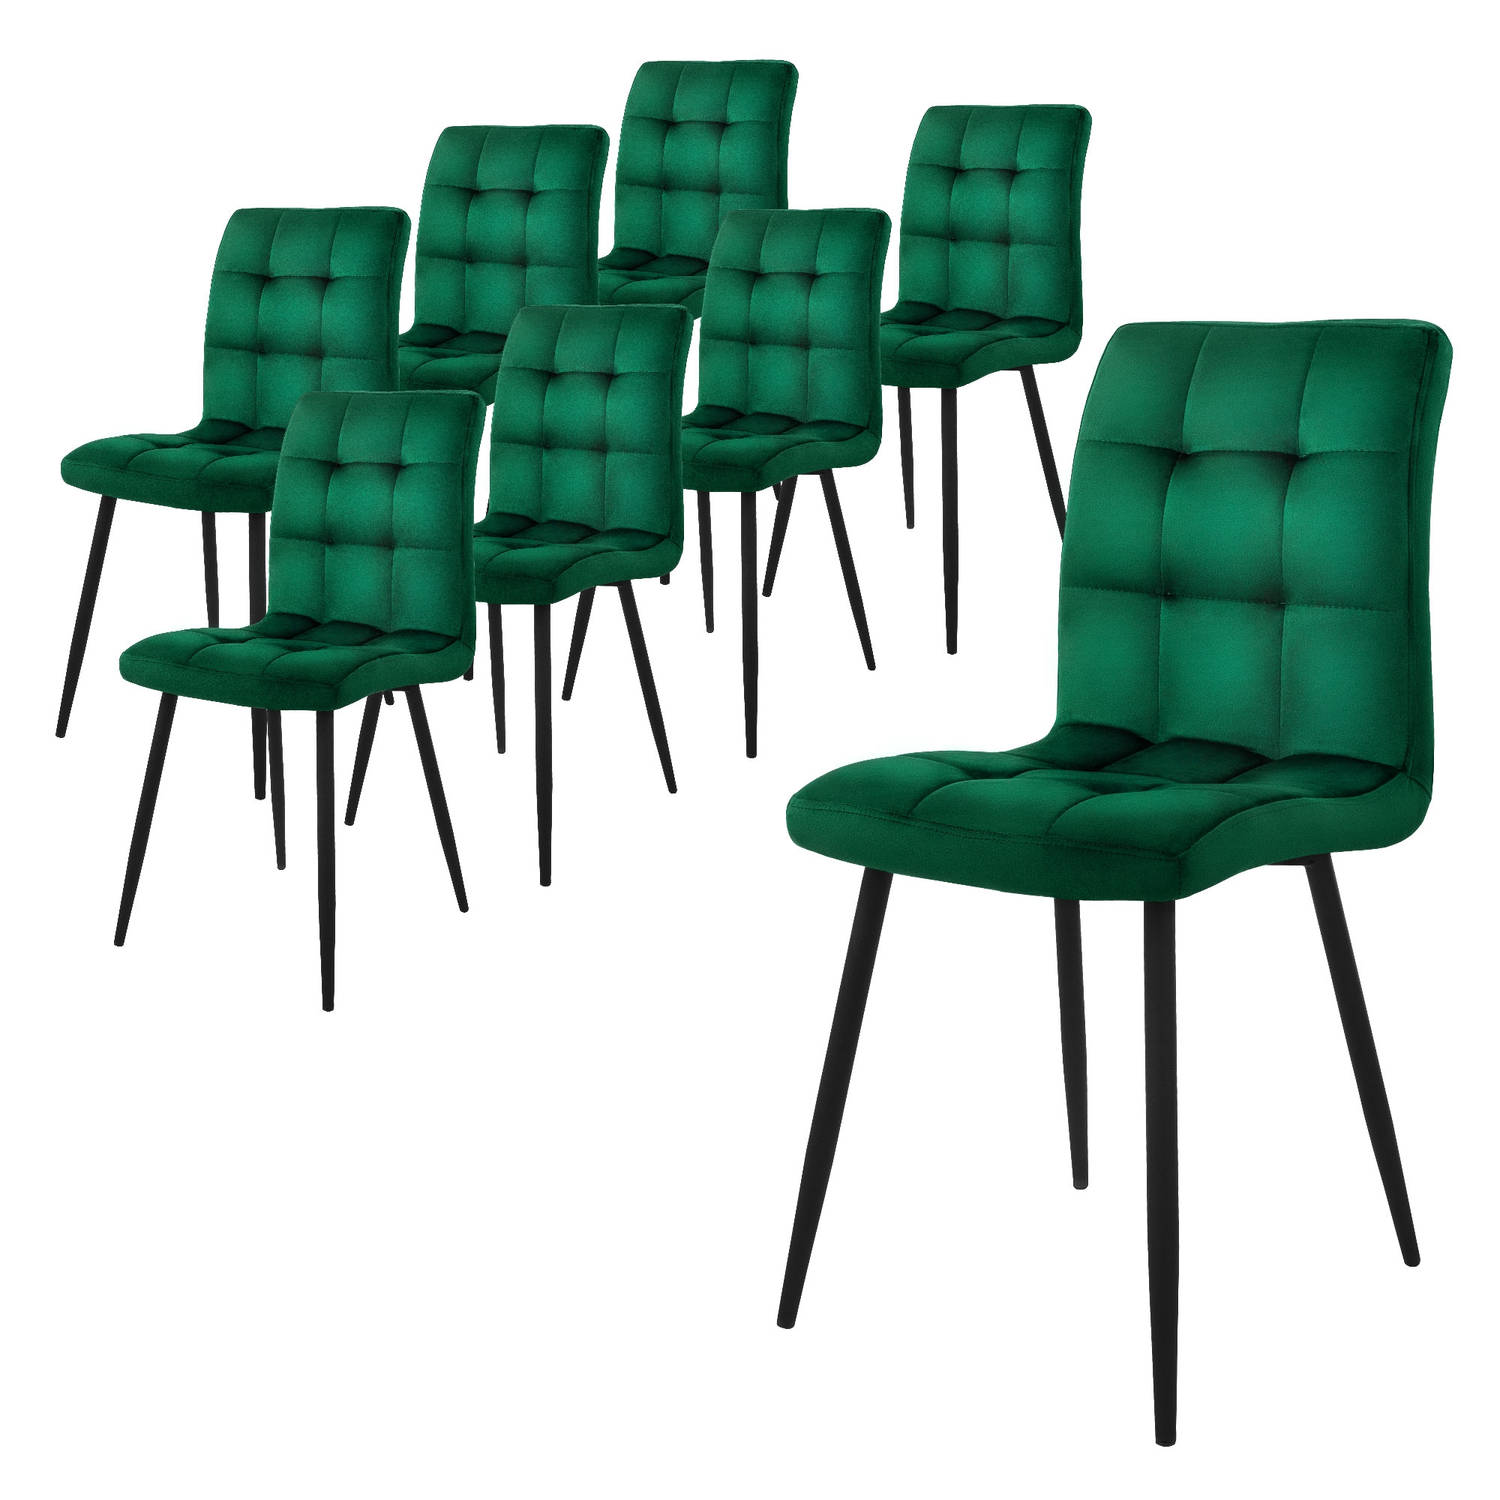 ML-Design eetkamerstoelen set van 8, donkergroen, keukenstoel met fluwelen bekleding, woonkamerstoel met rugleuning, gestoffeerde stoel met metalen poten, ergonomische stoel voor e